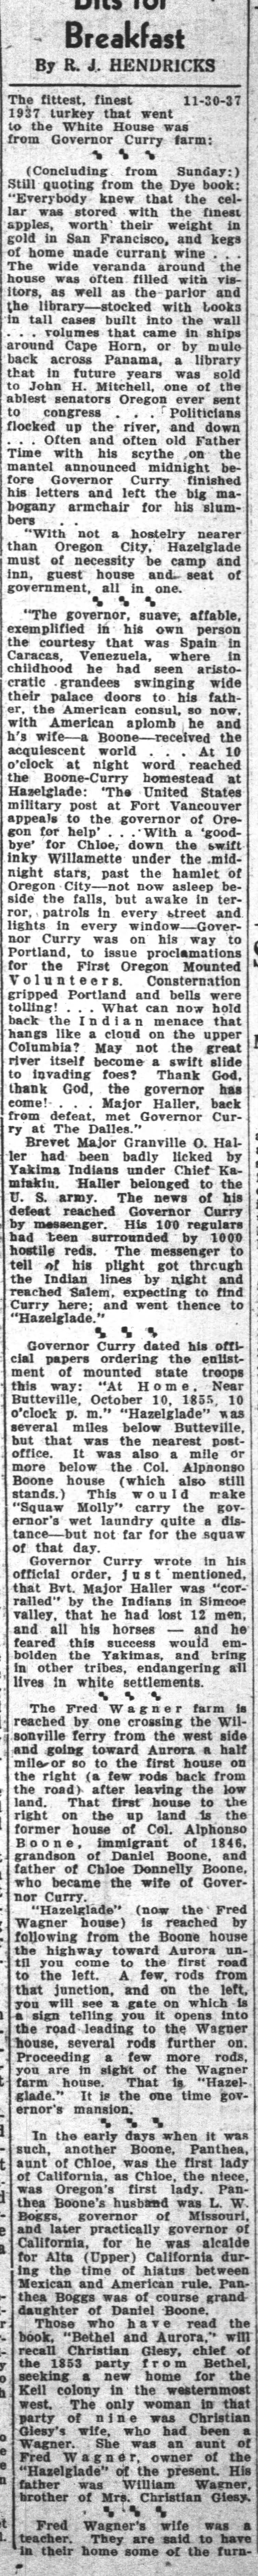 Includes info on Panthena Boggs
The Oregon Ststesman, Salem
30 Nov 1937-Tue.